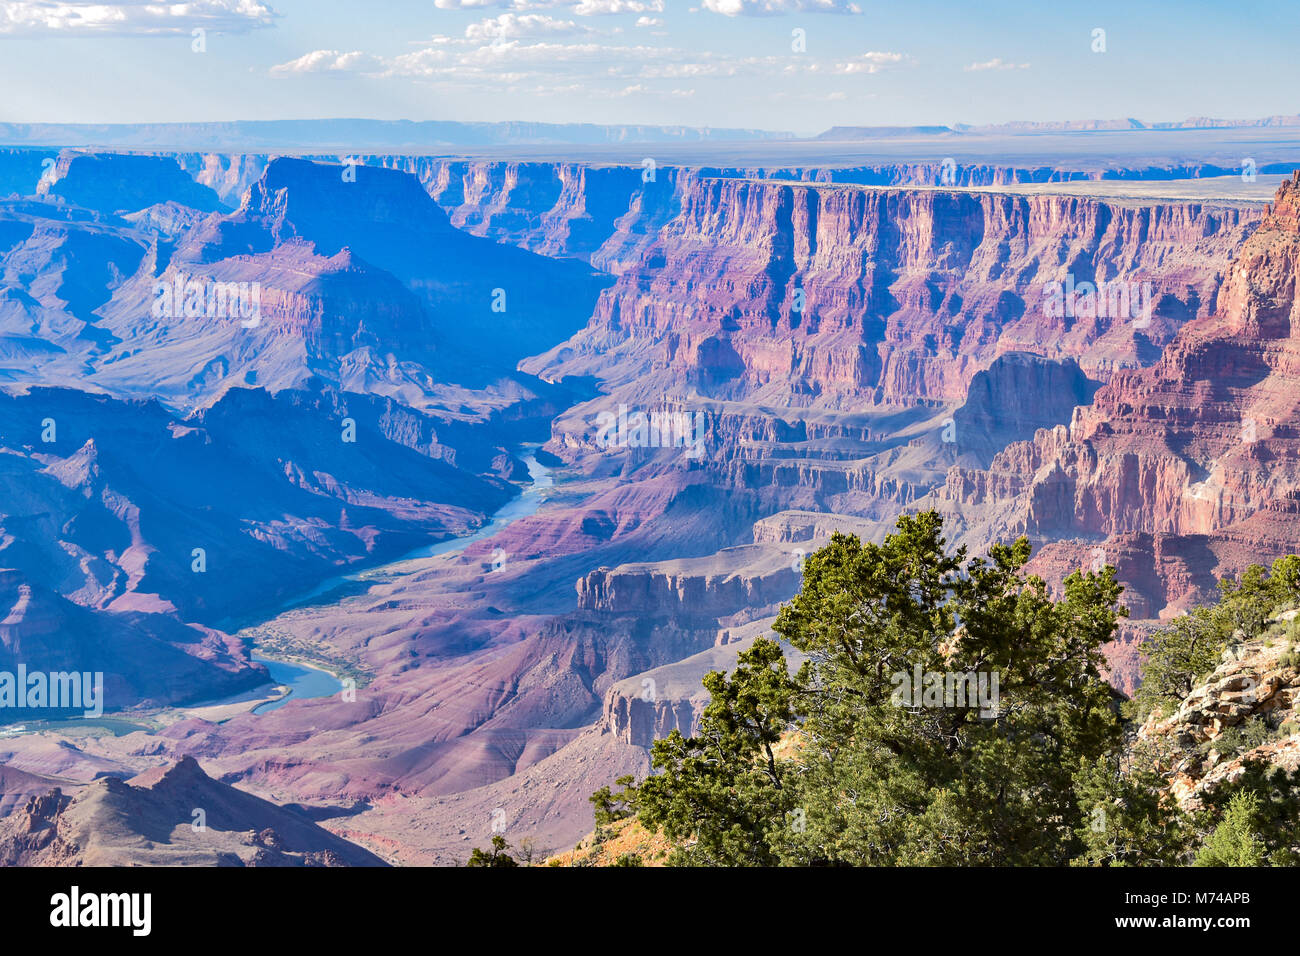 Le splendide viste dall'Orlo Sud del Grand Canyon e il Fiume Colorado in esecuzione attraverso di esso. Foto Stock